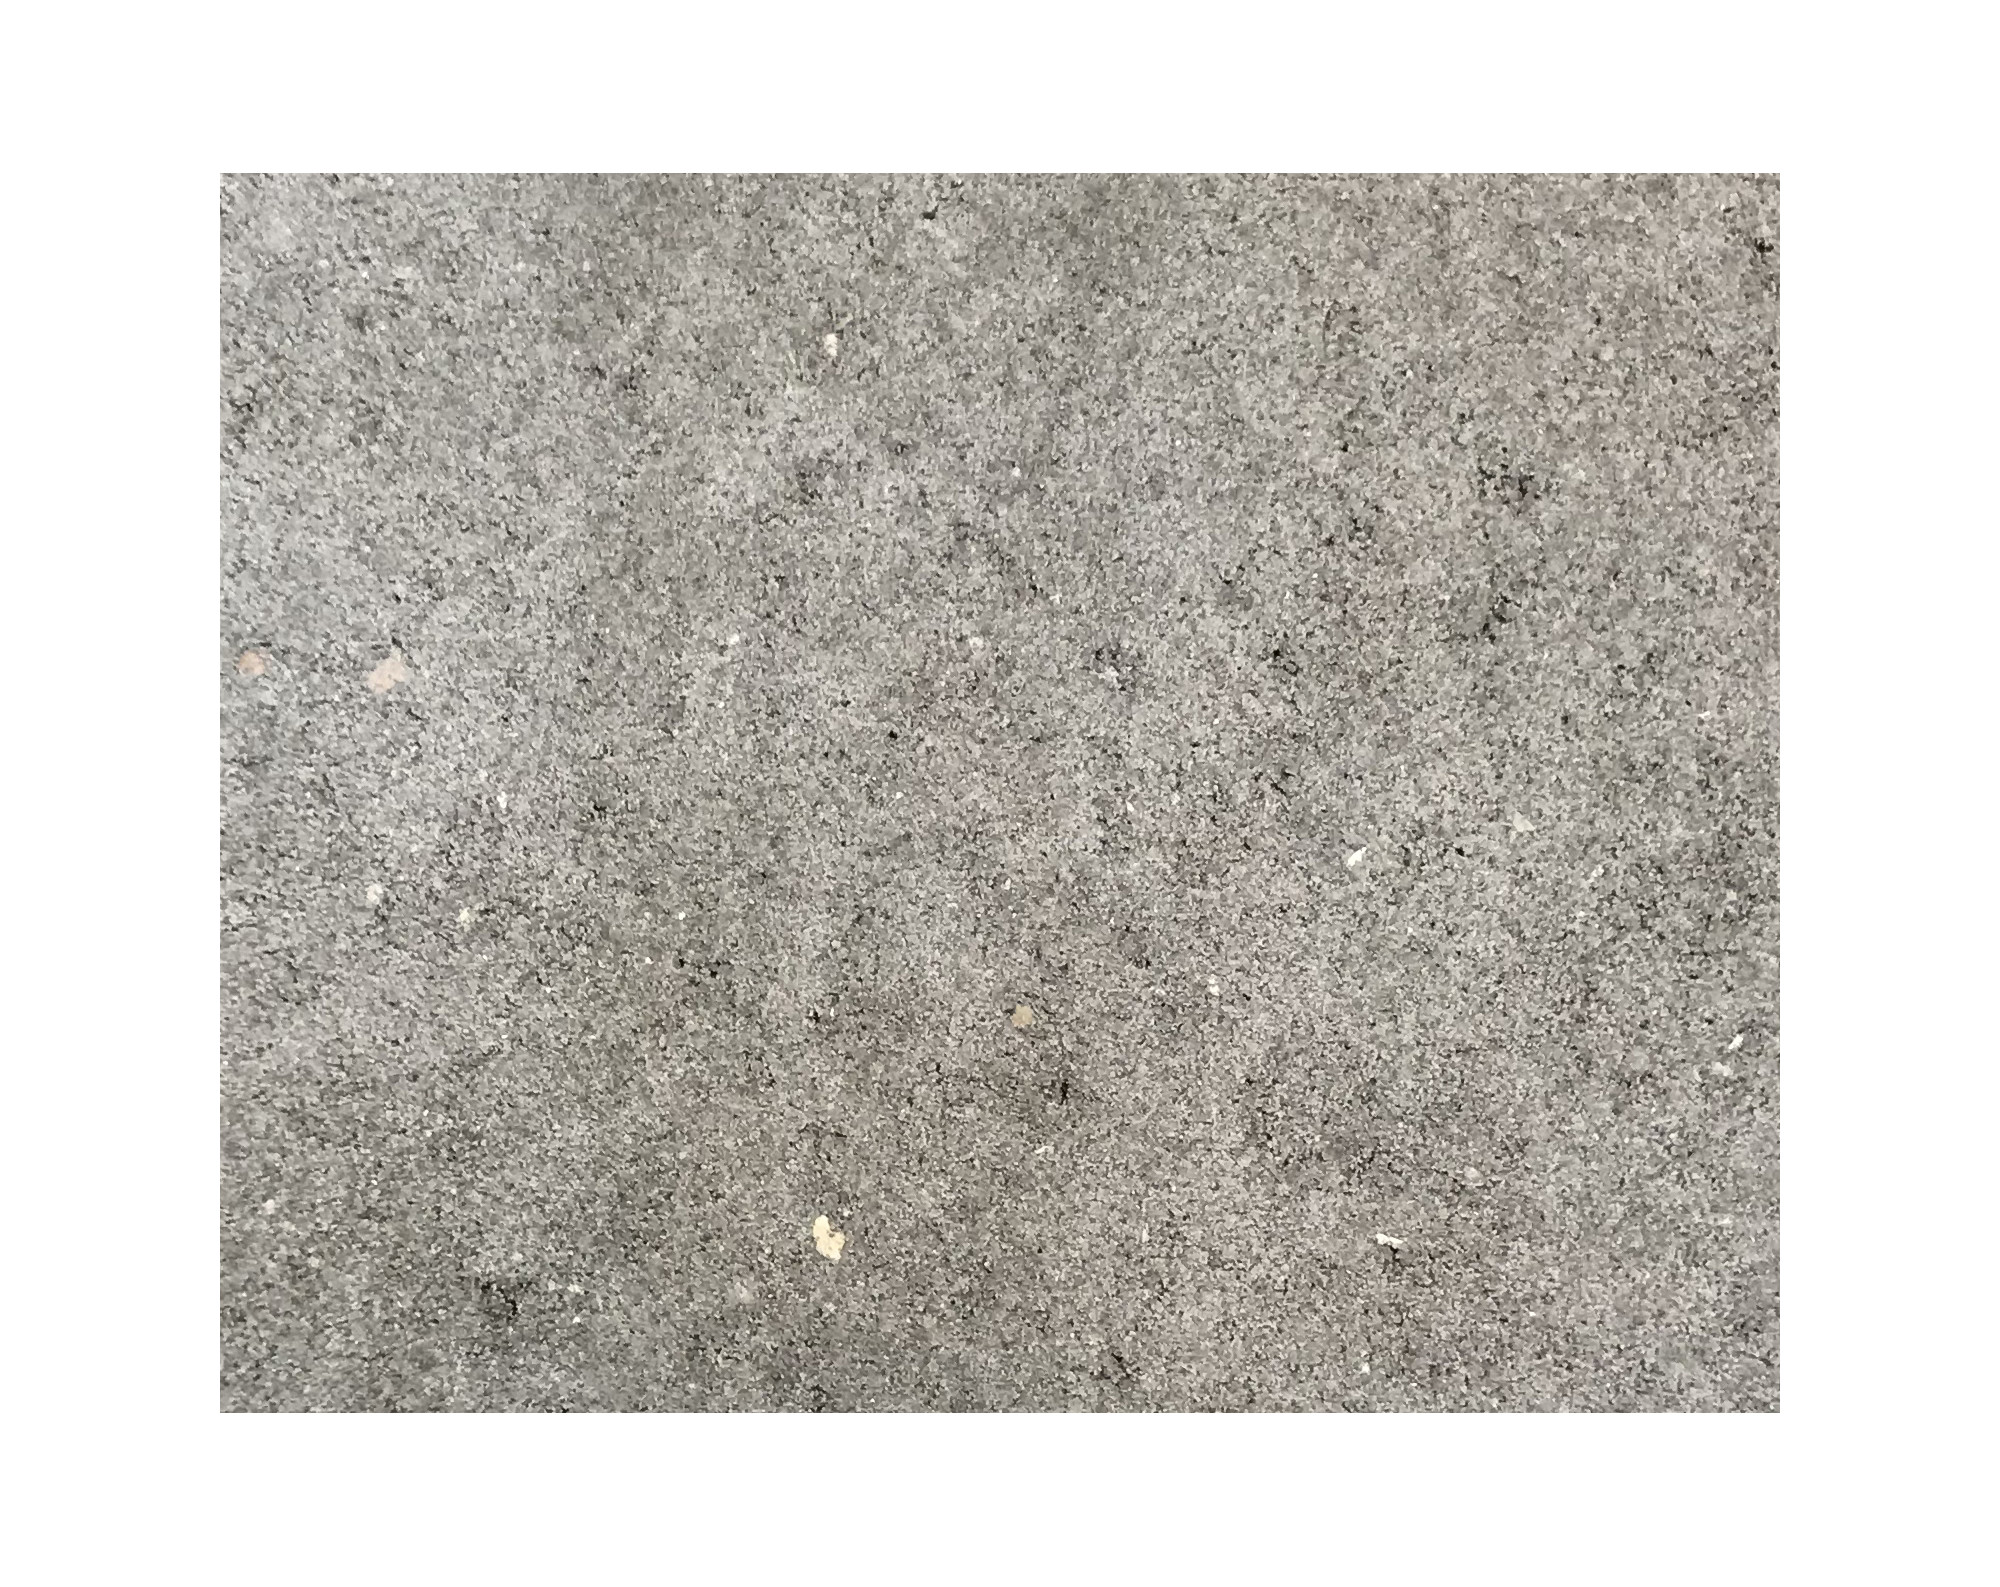 Harmo roc athenset, rustica-serie, ovaal d:3,00mx7,00m, grijs, beton